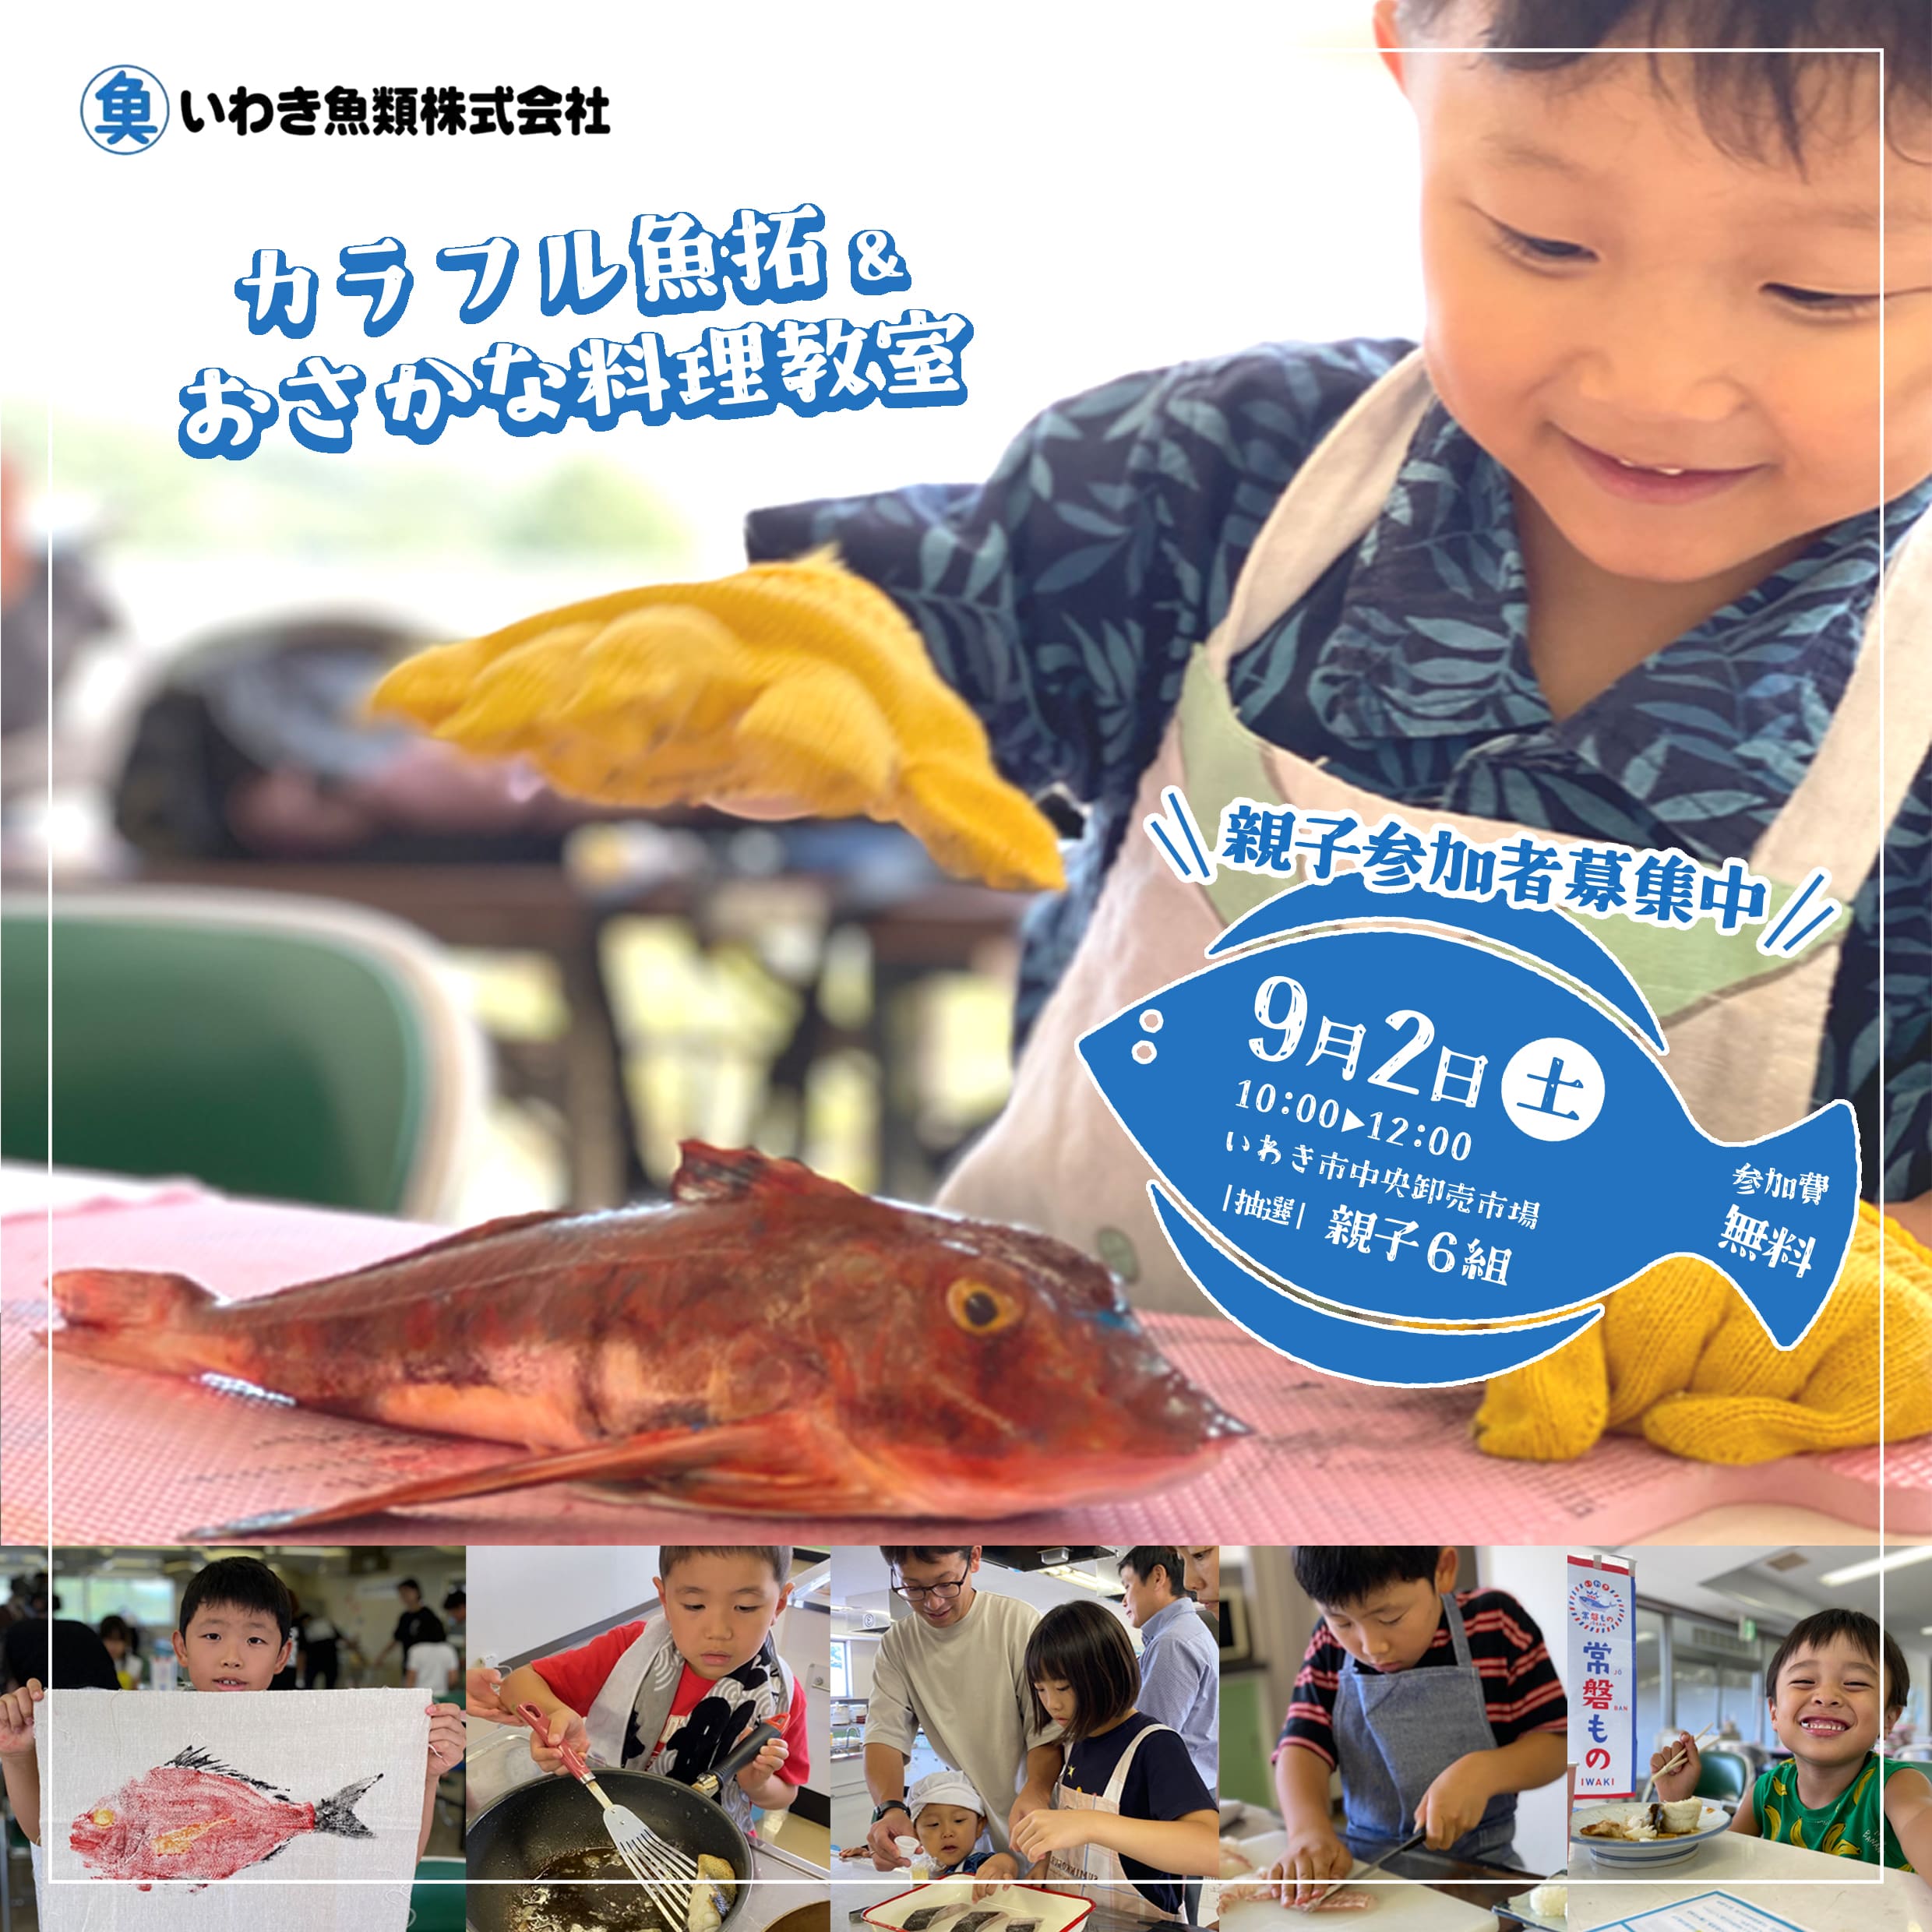 9月2日『カラフル魚拓とおさかな料理教室』を開催します